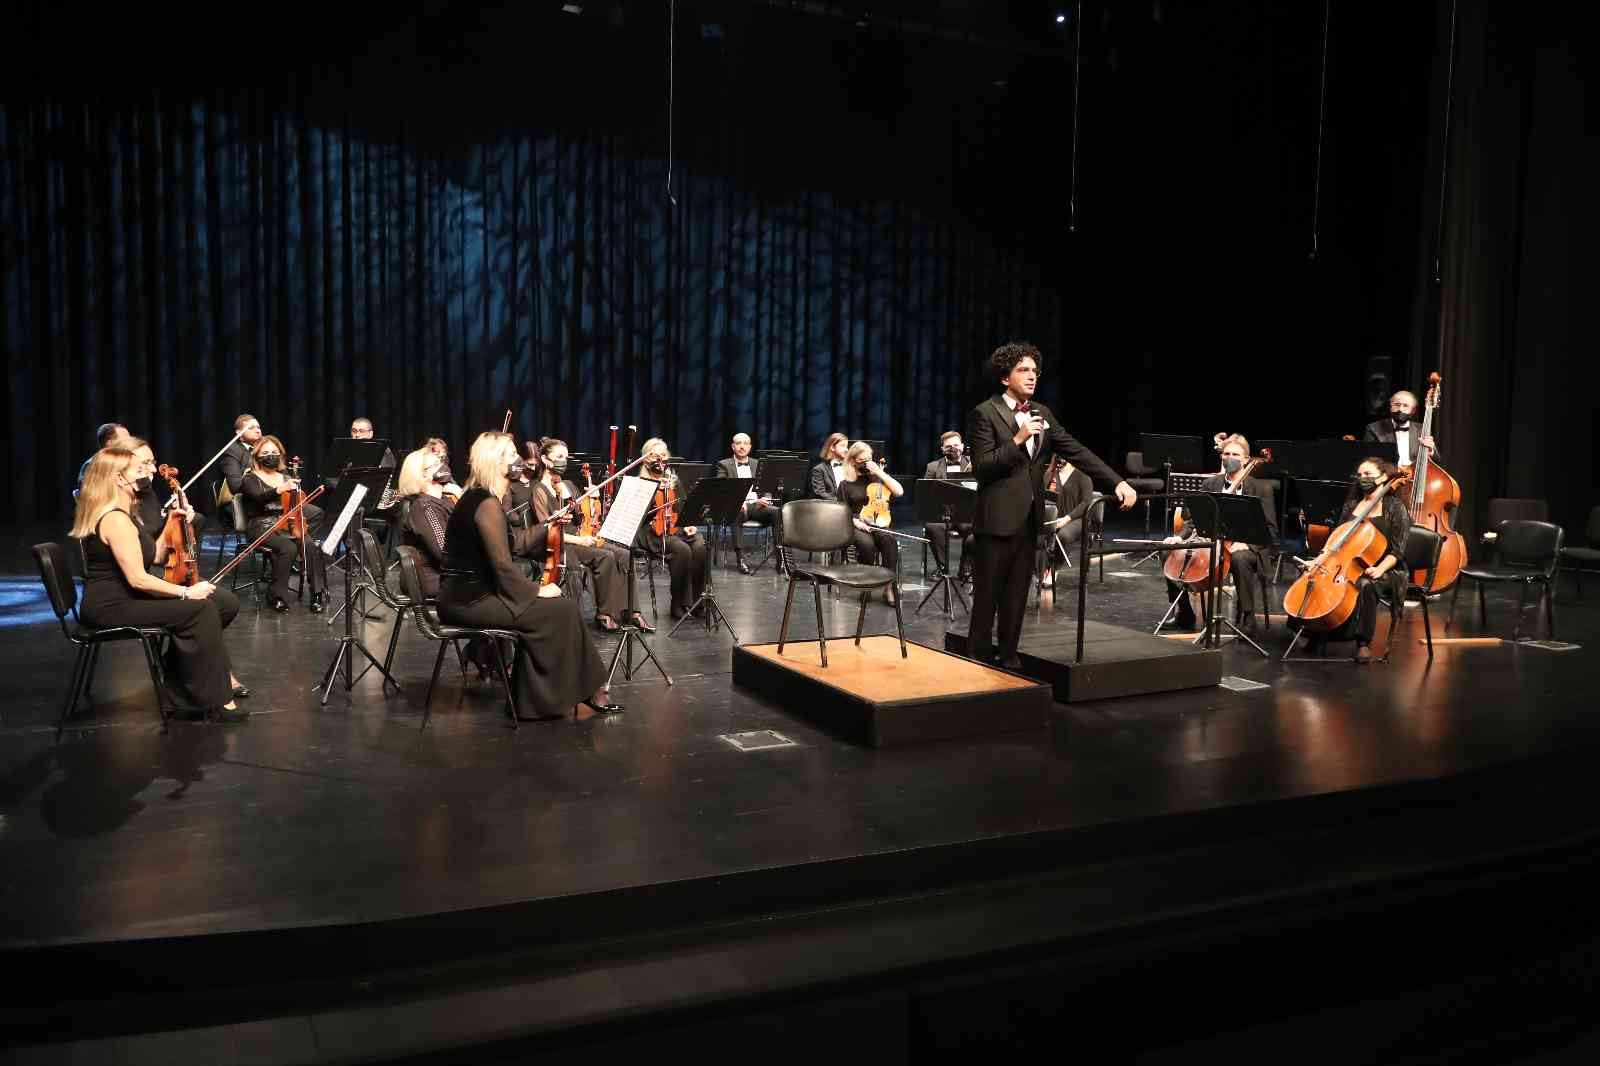 Başakşehir’de İstanbul Devlet Senfoni Orkestrası’ndan müthiş konser #istanbul